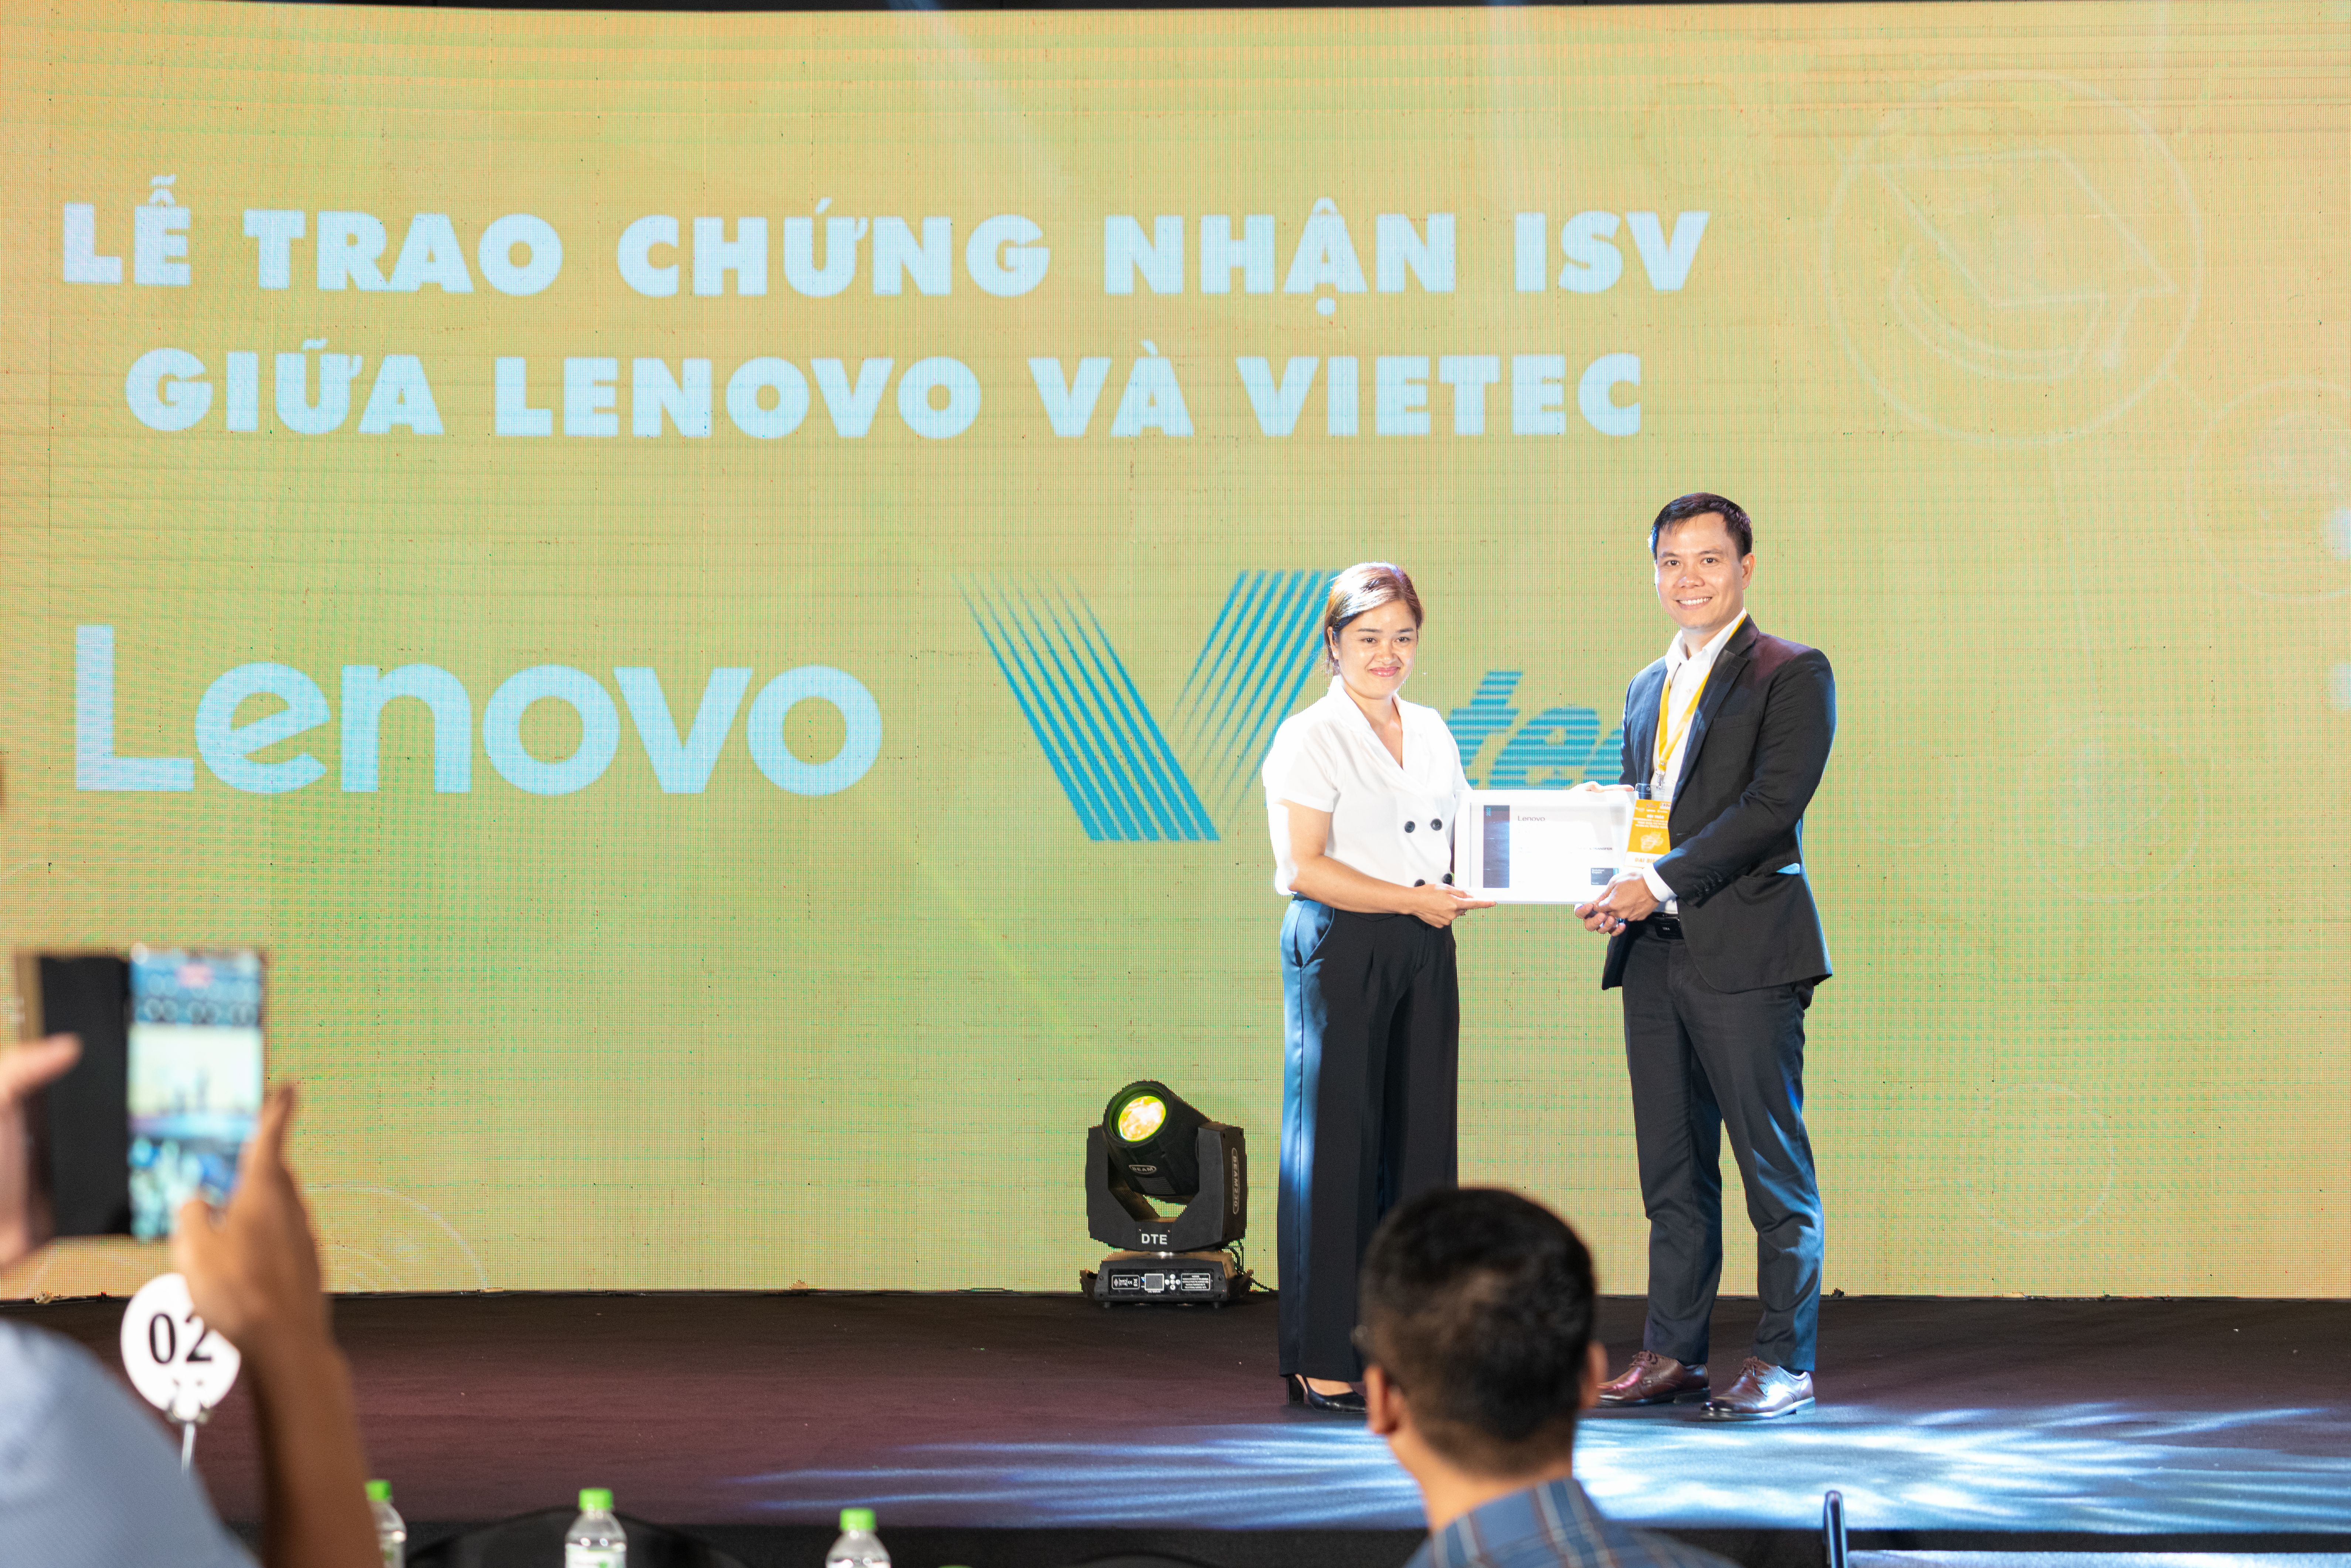 Lenovo trao chứng nhận ISV cho Vietec., Corp chính thức trở thành đại diện phân phối sản phẩm tại thị trường Việt Nam